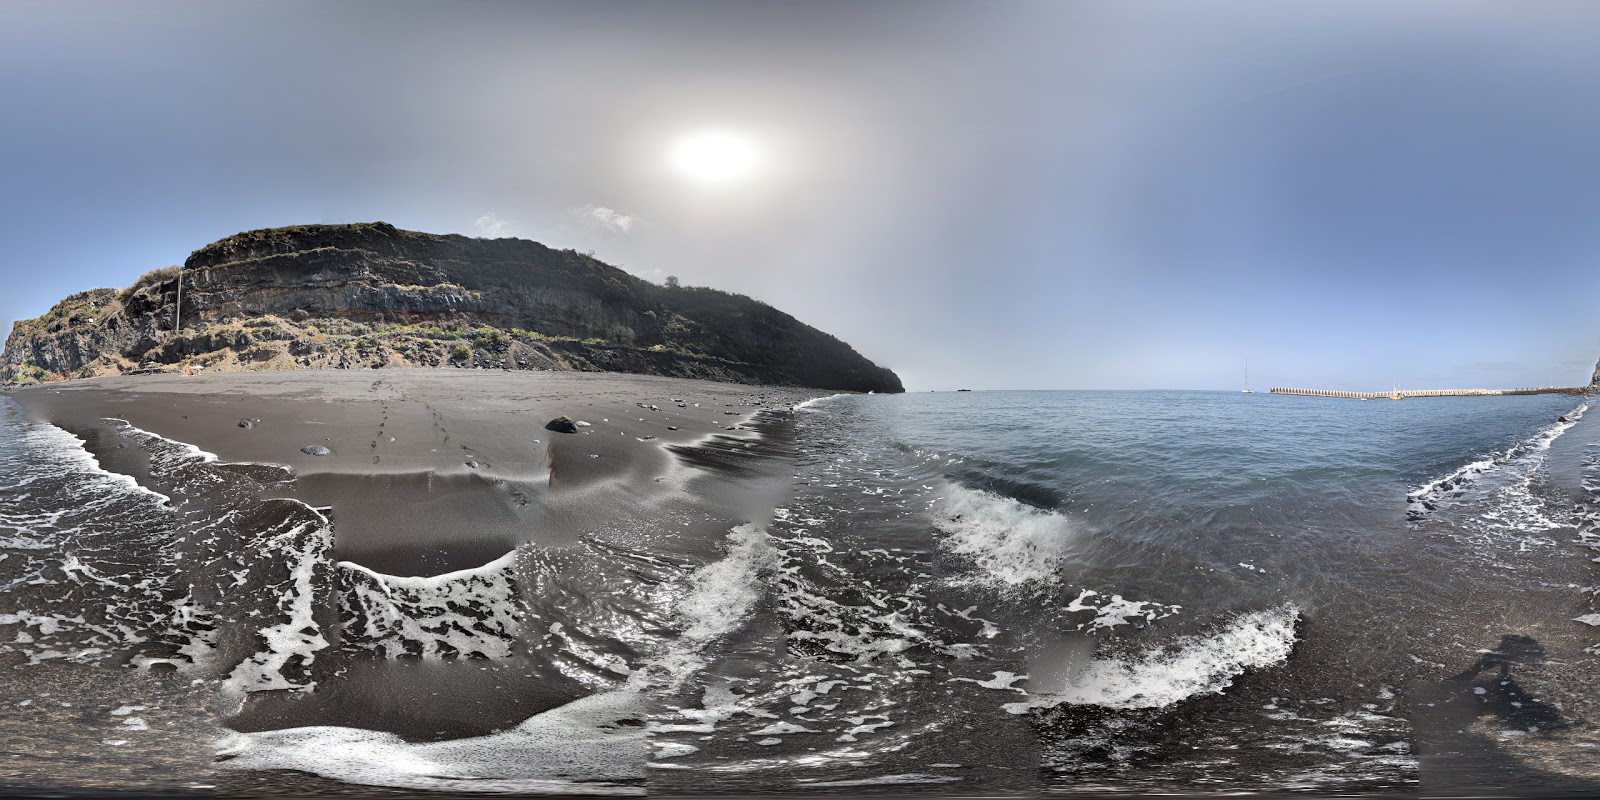 Zdjęcie Tazacorte beach z powierzchnią czarny piasek